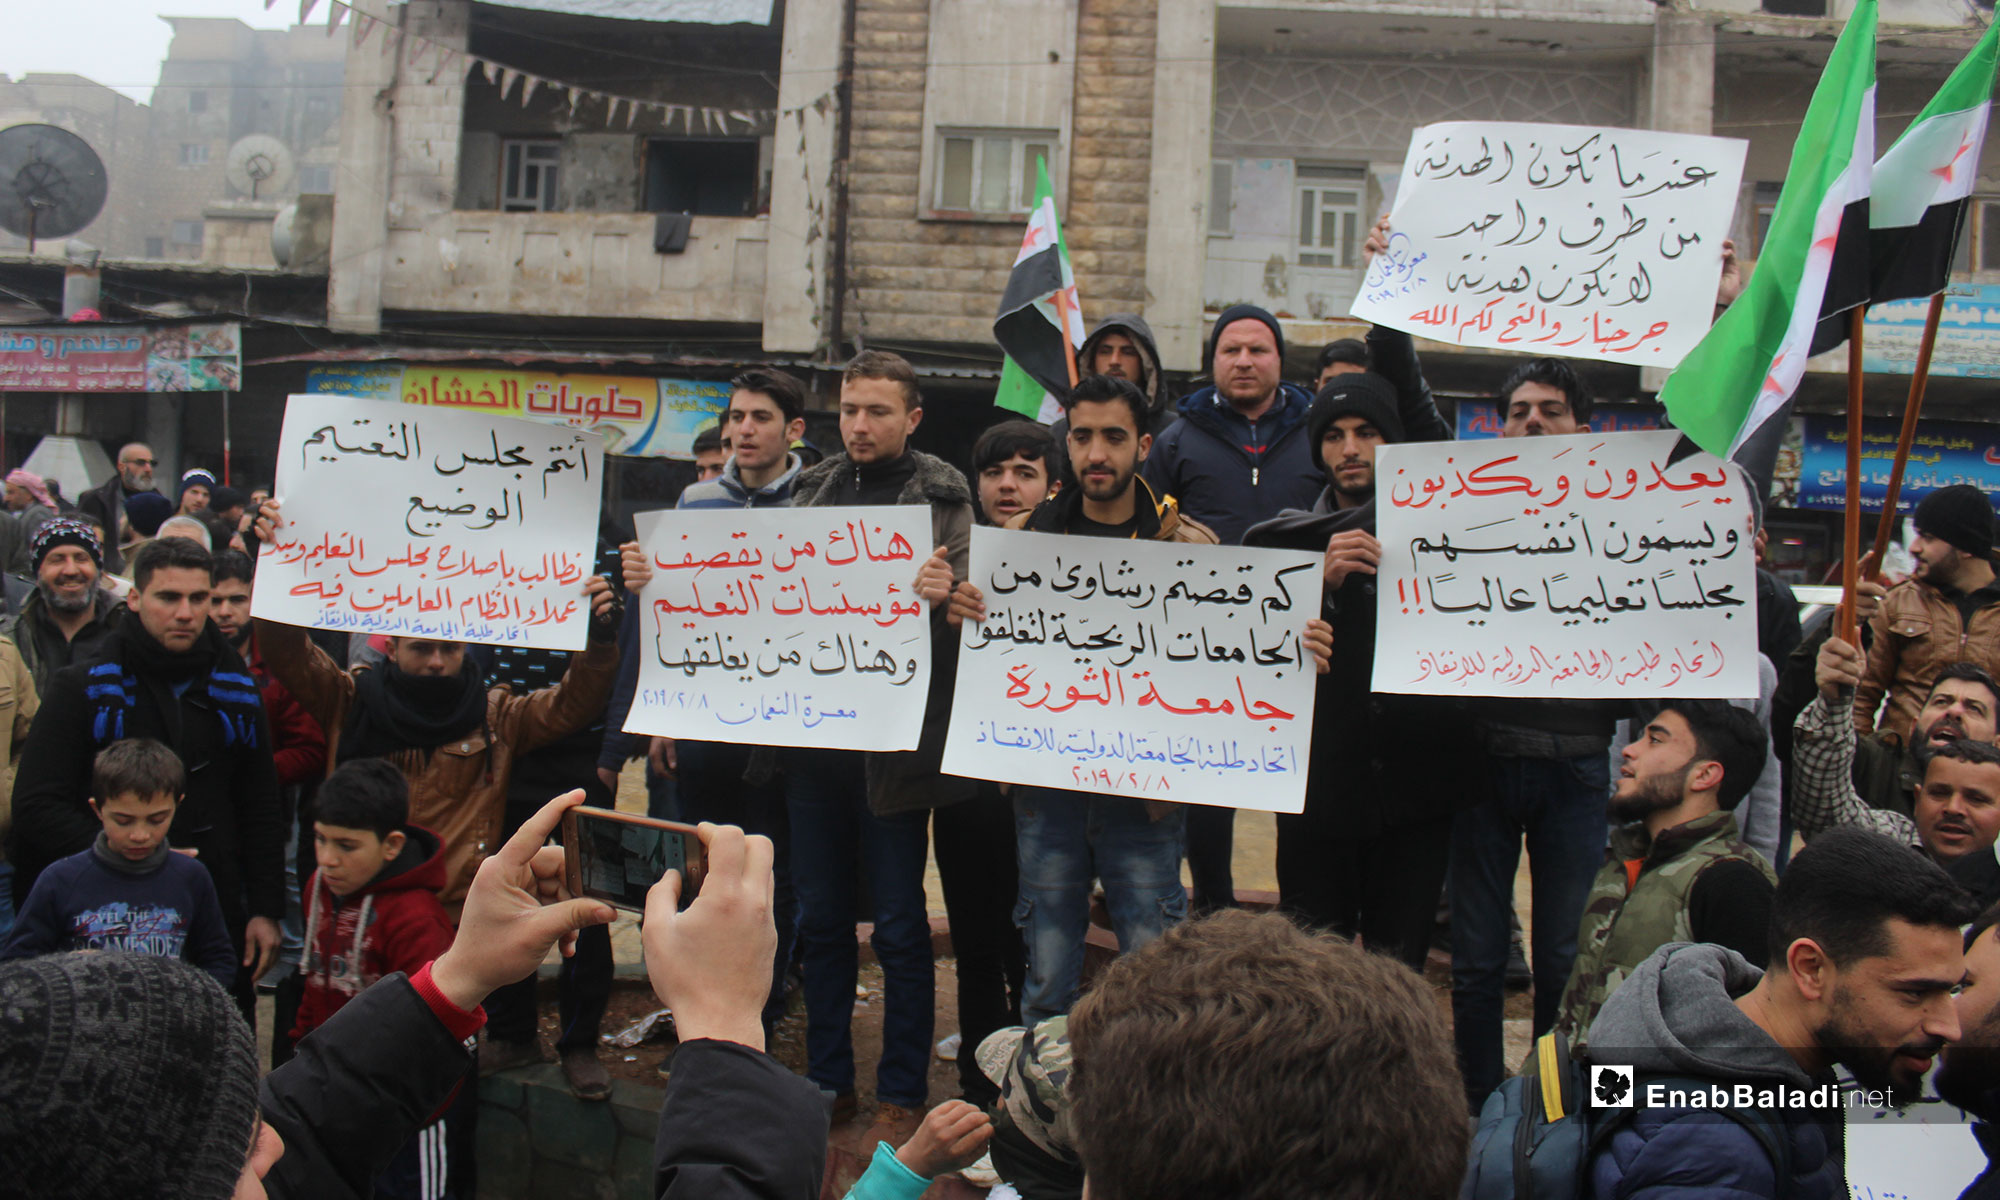 مظاهرة في معرة النعمان تندد بقرار إغلاق جامعة الإنقاذ في ريف إدلب - 8 من شباط 2019 (عنب بلدي)